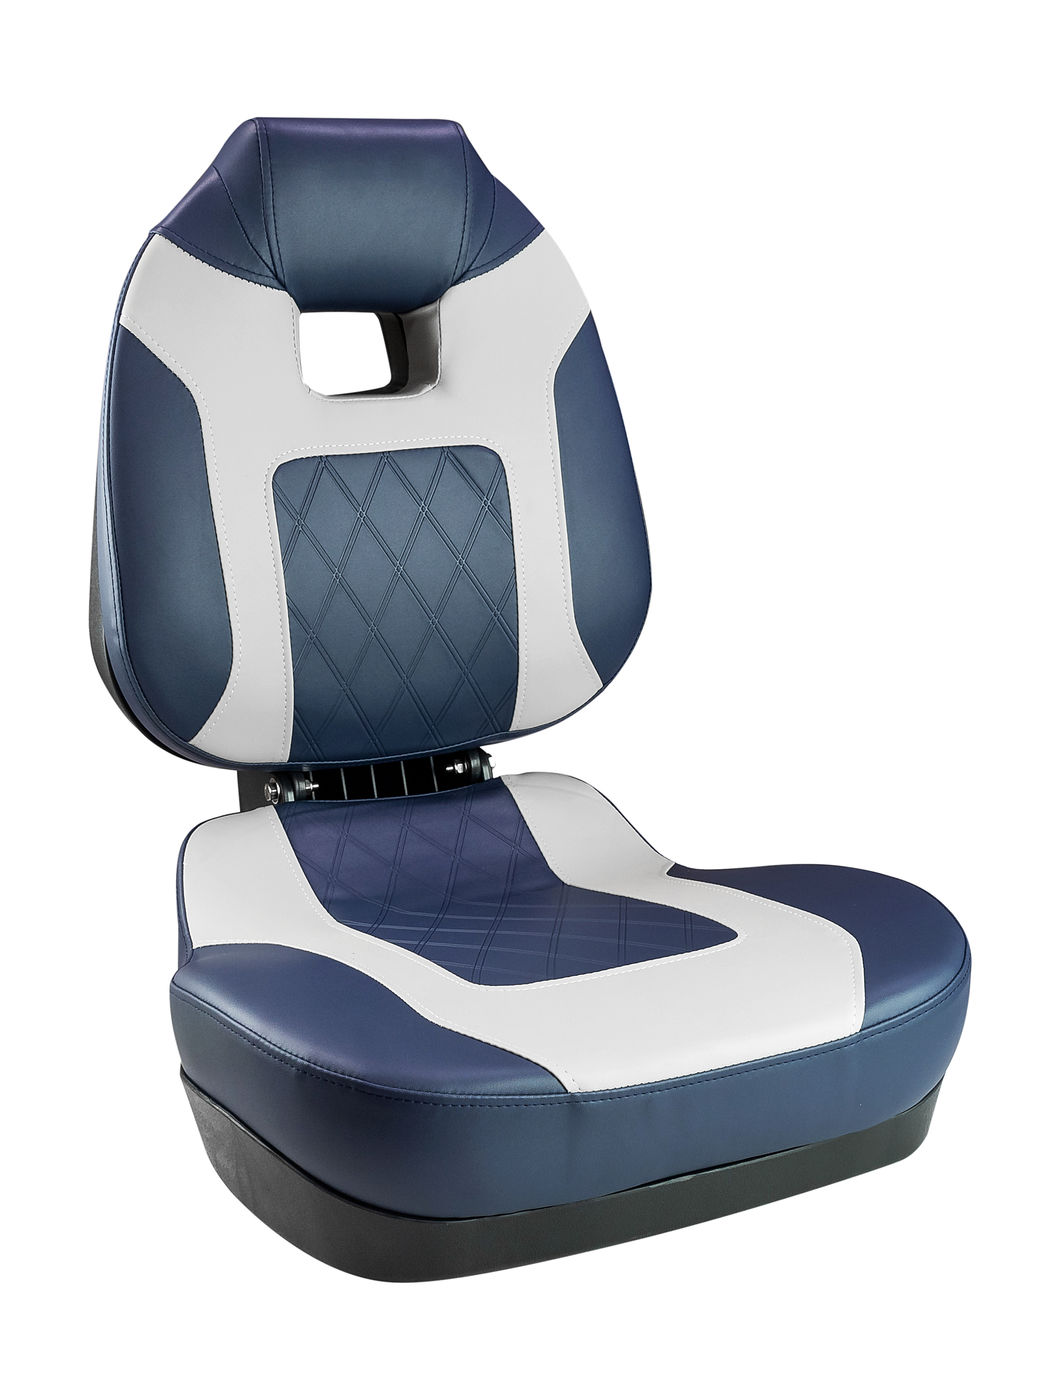 Кресло складное мягкое FISH PRO II с высокой спинкой, цвет синий/серый, 889-7752